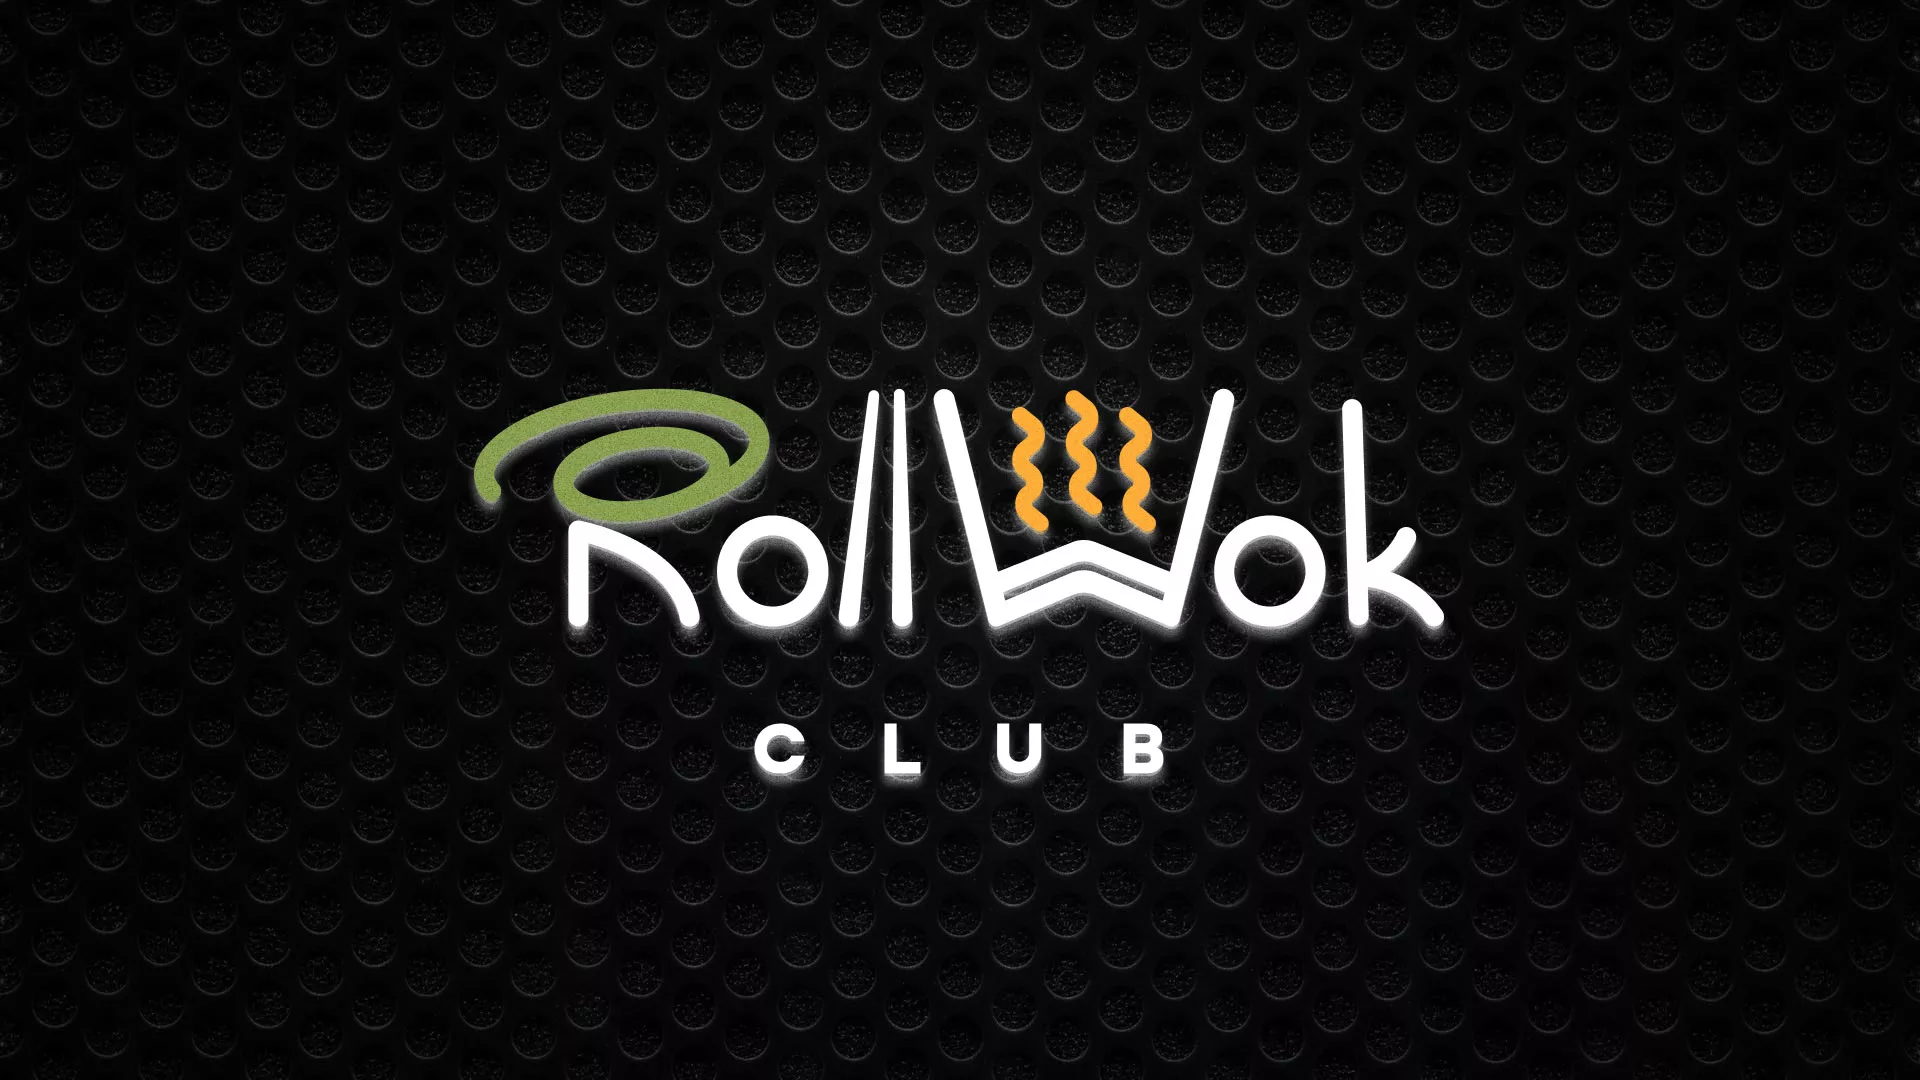 Брендирование торговых точек суши-бара «Roll Wok Club» в Новохопёрске